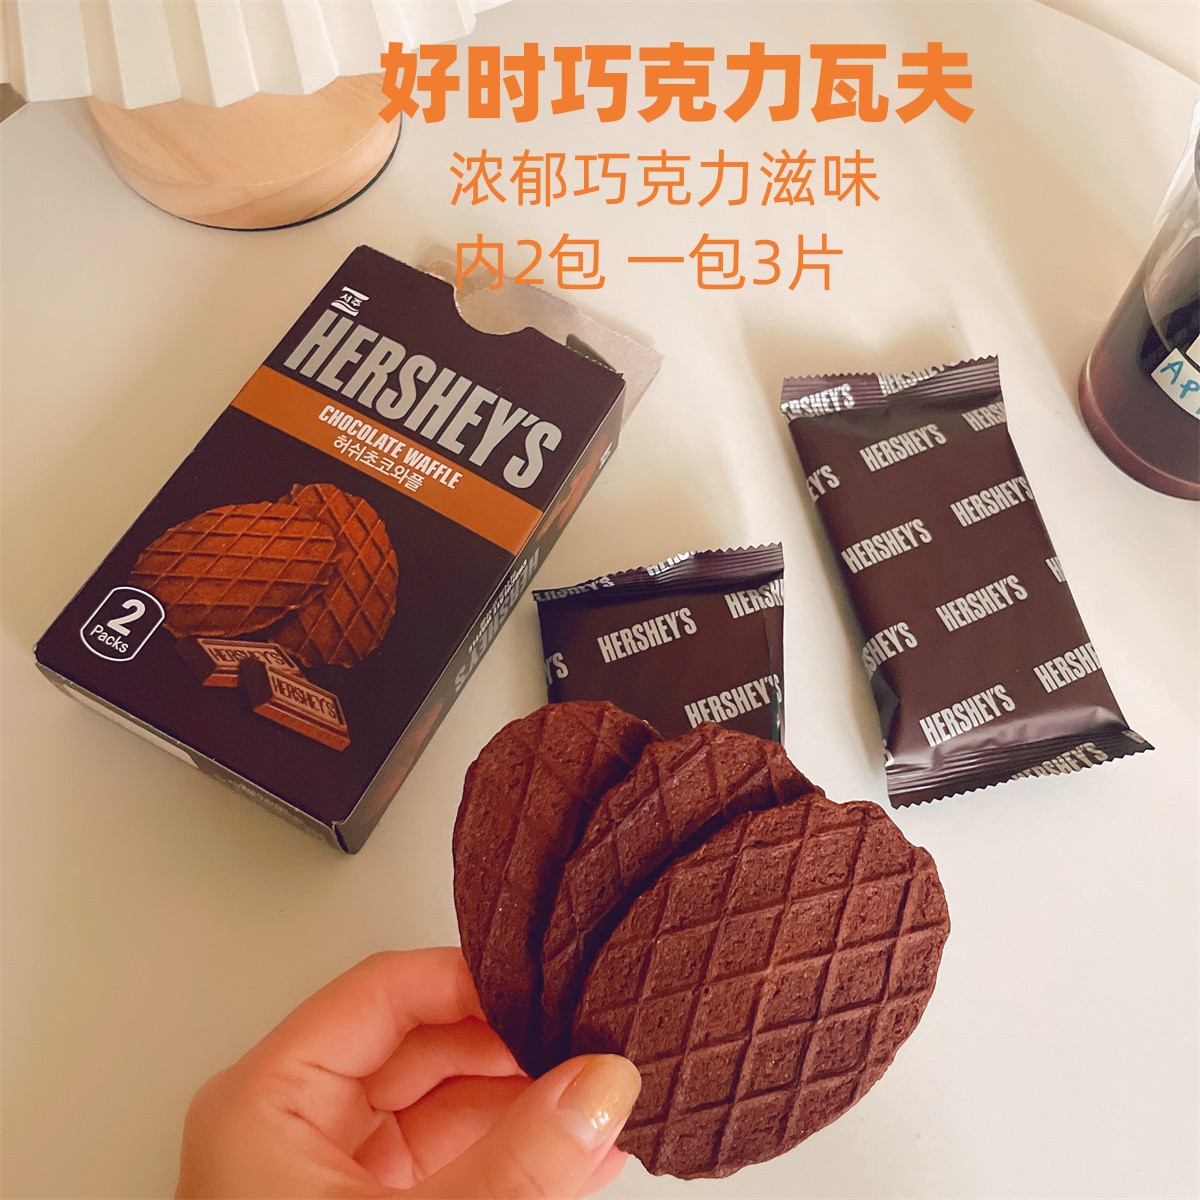 好时巧克力华夫饼 瓦夫饼干酥脆香甜2小袋巧克力威化韩国进口零食